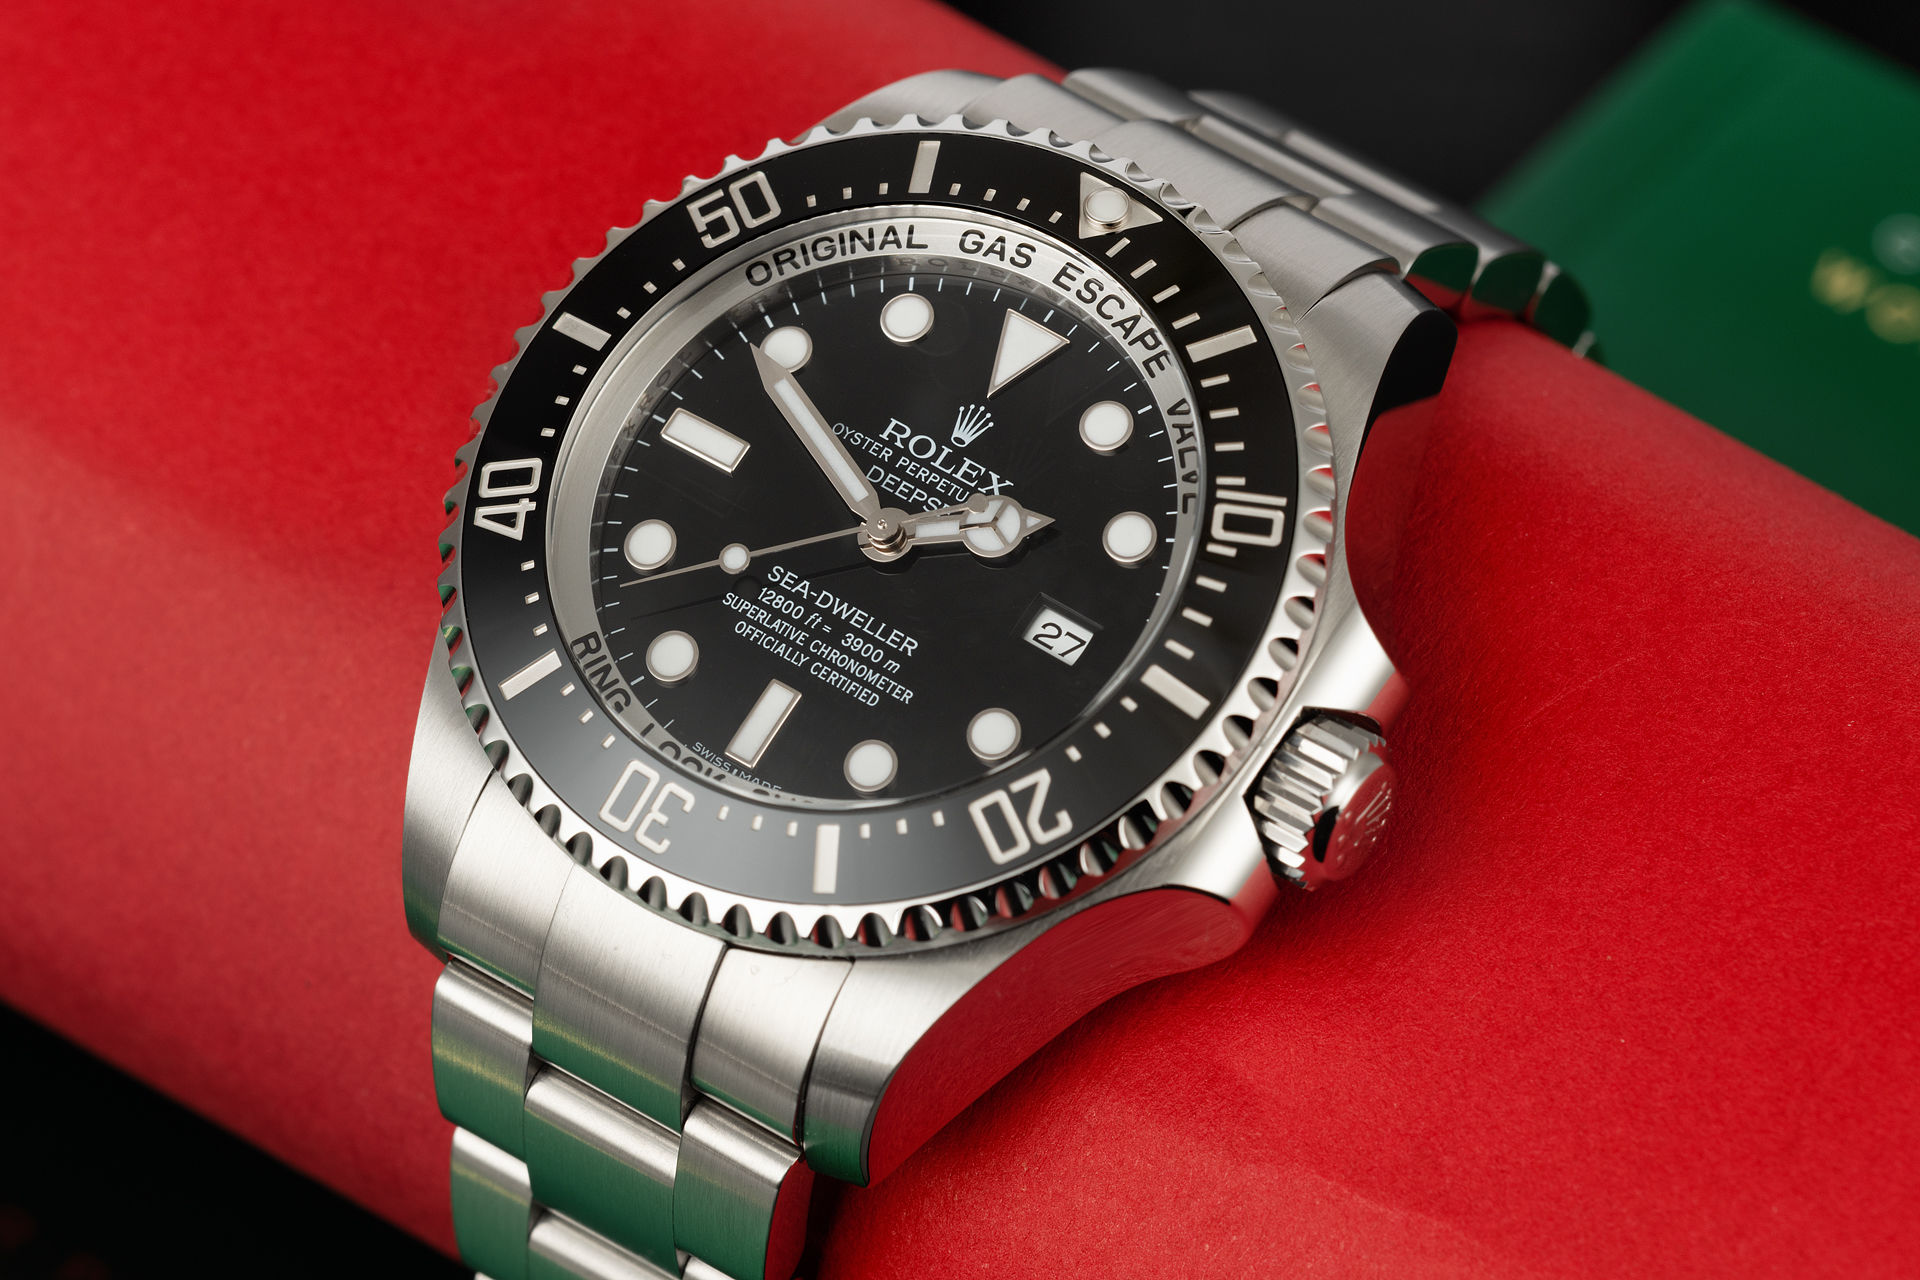 ref 116660 | 'Complete Set' 5 Year Warranty | Rolex Sea-Dweller Deepsea